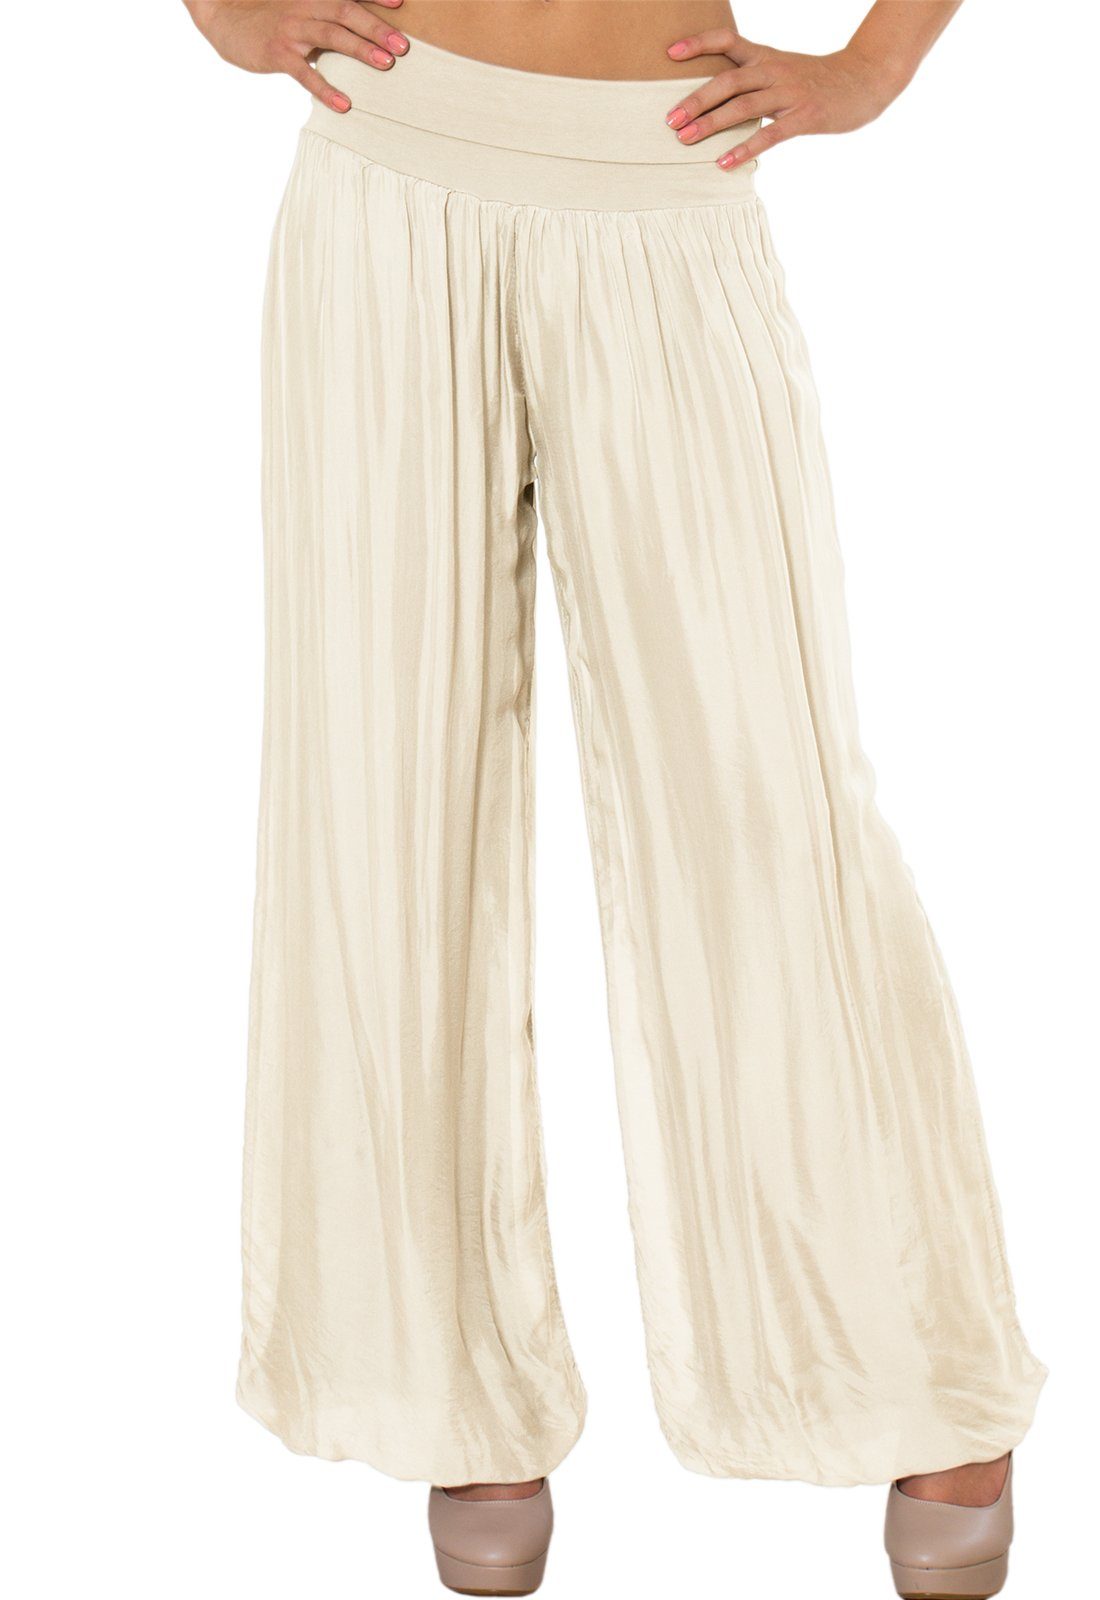 Caspar Palazzohose KHS010 elegante Damen Hose mit Seidenanteil und hohem Stretch Bund beige